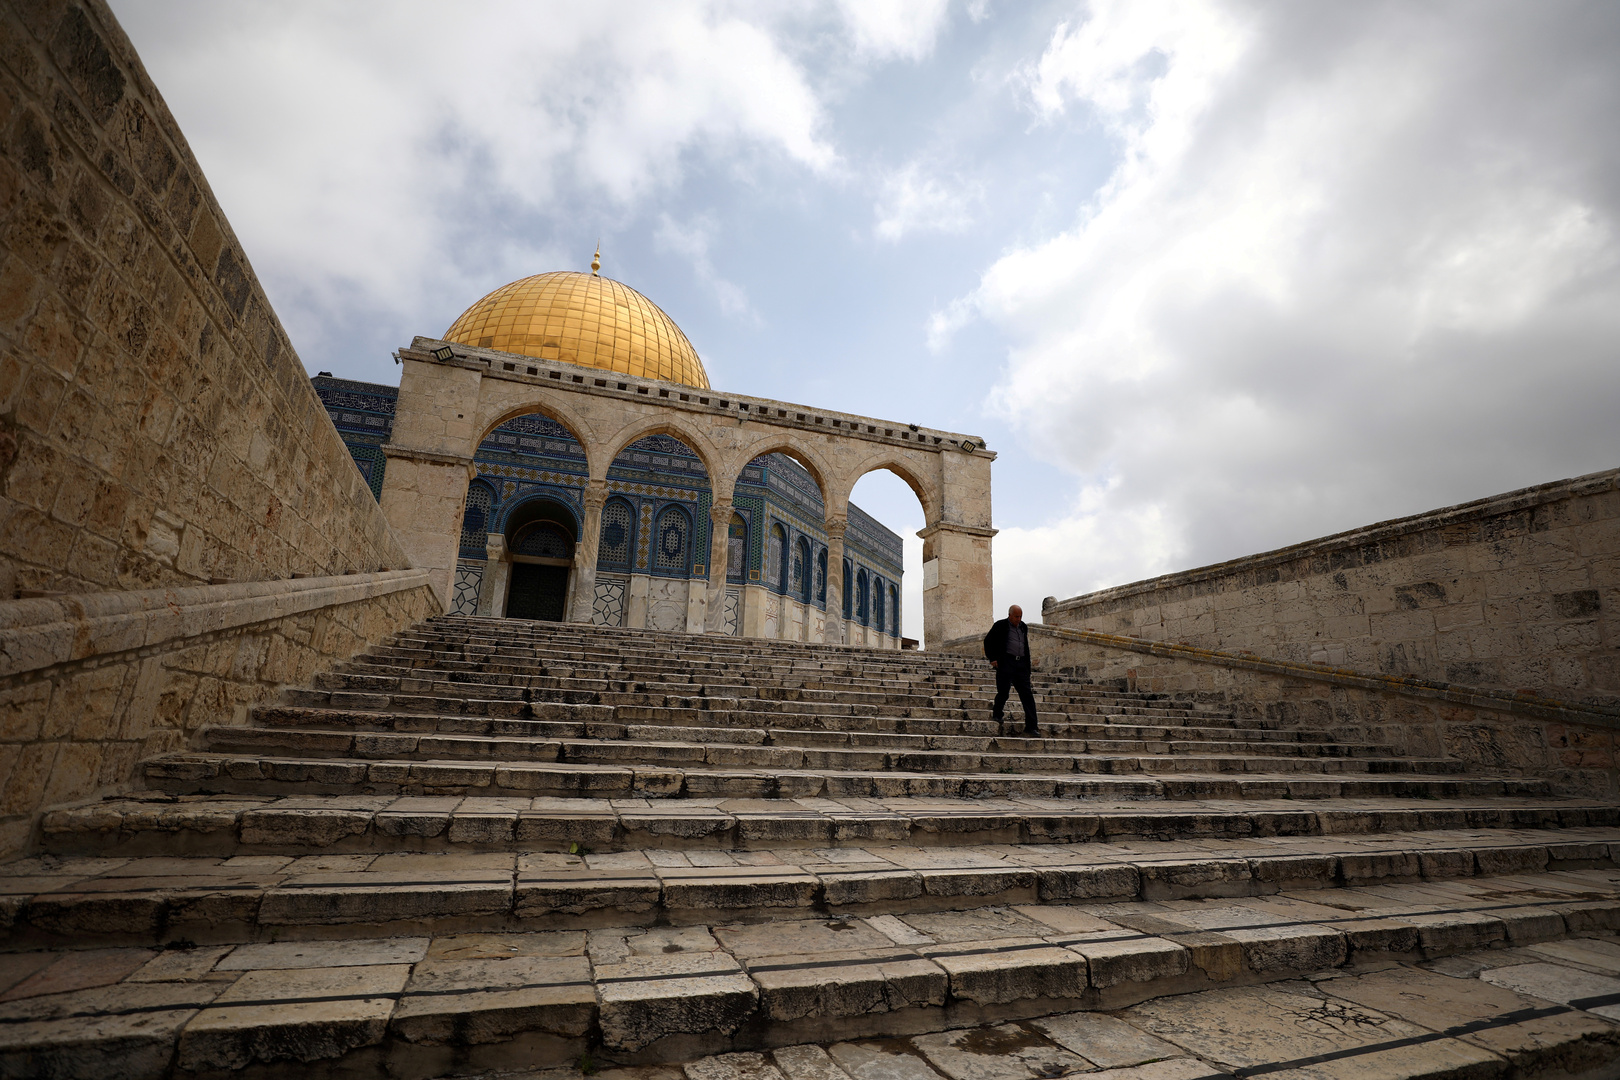 الحكومة الأردنية تحذر إسرائيل من المساس بالعاملين بالمسجد الأقصى